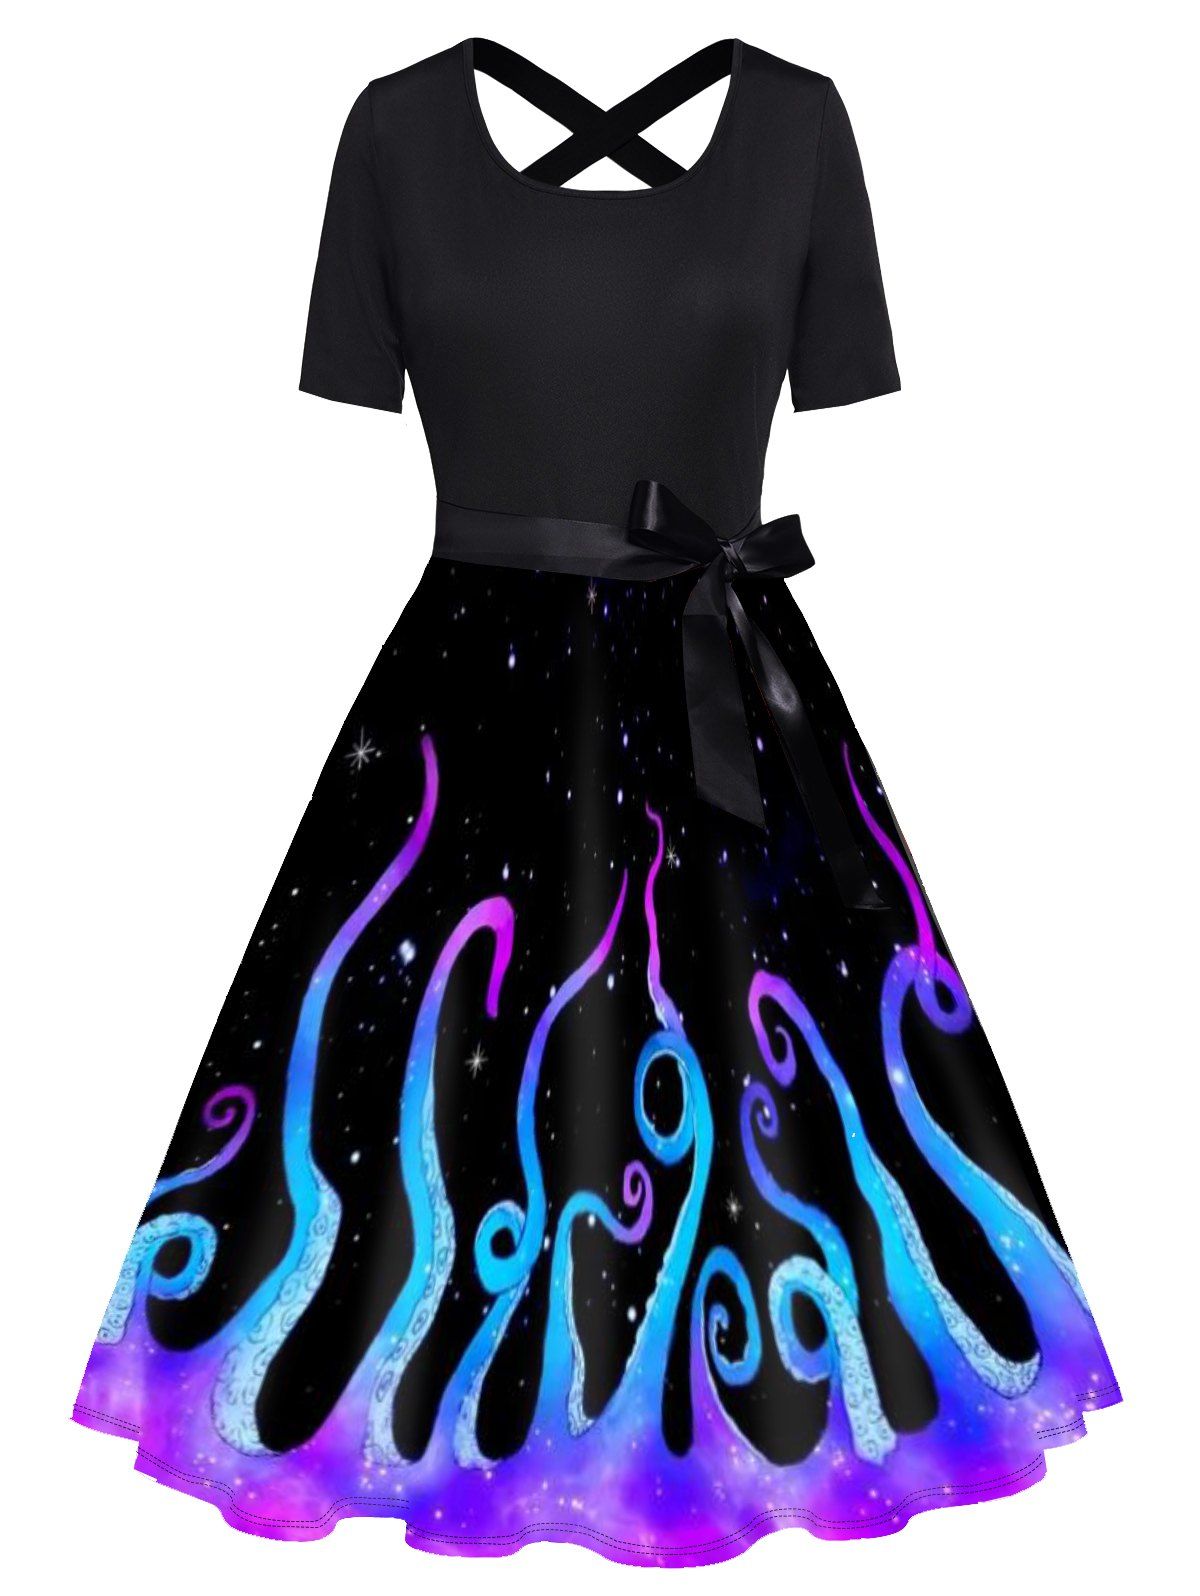 Galaxy Octopus Print Short Sleeve Dress Bowknot Cross High Waist A Line Dress - BLACK L